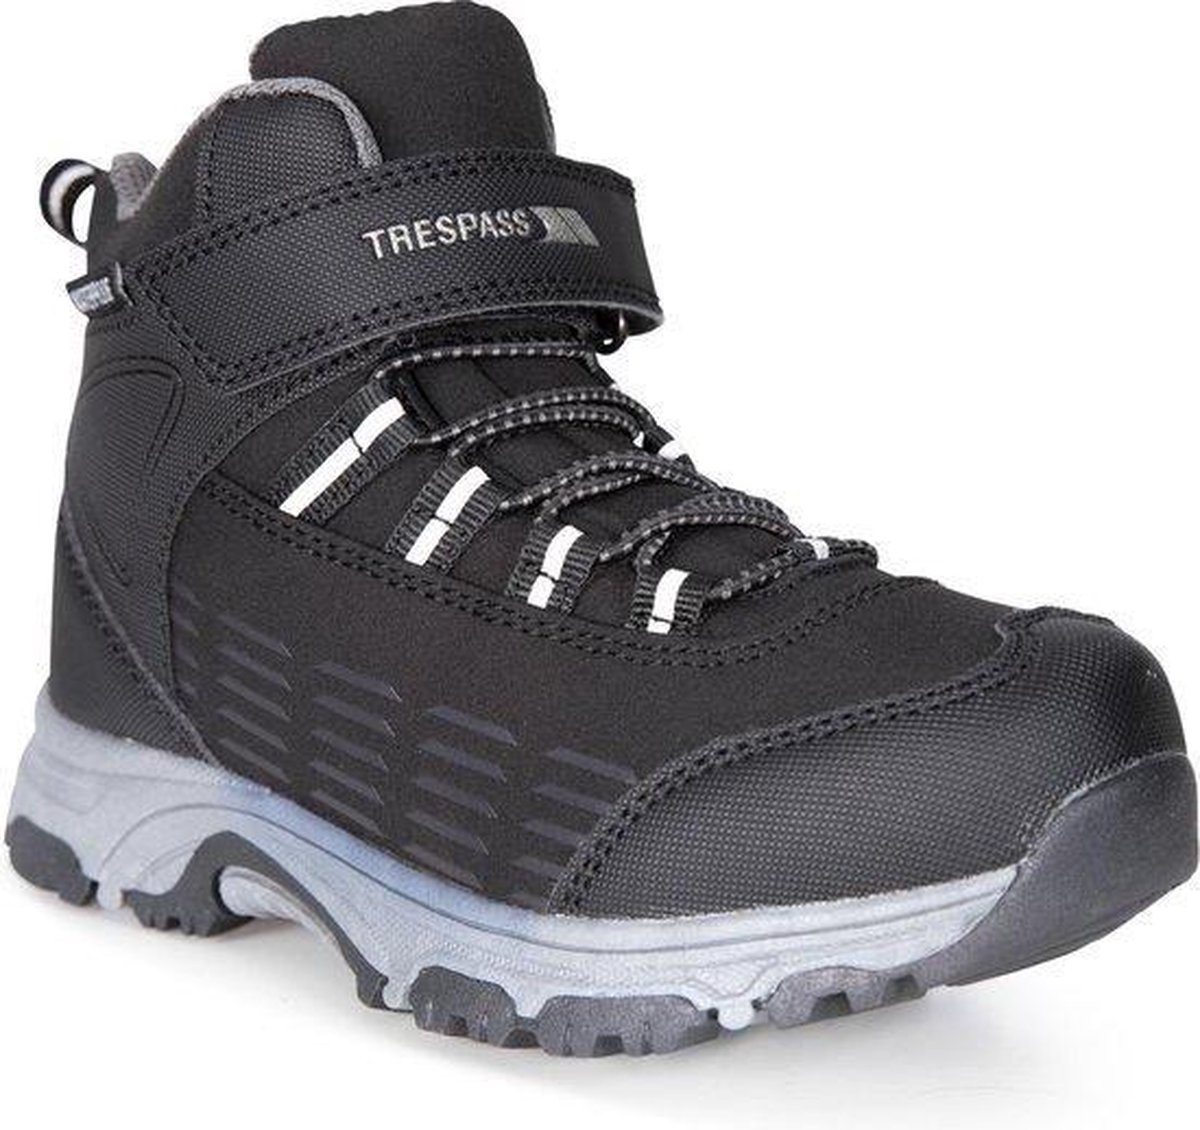 Trespass Childrens/Kids Harrelson Mid Cut Hiking Boots (Black)